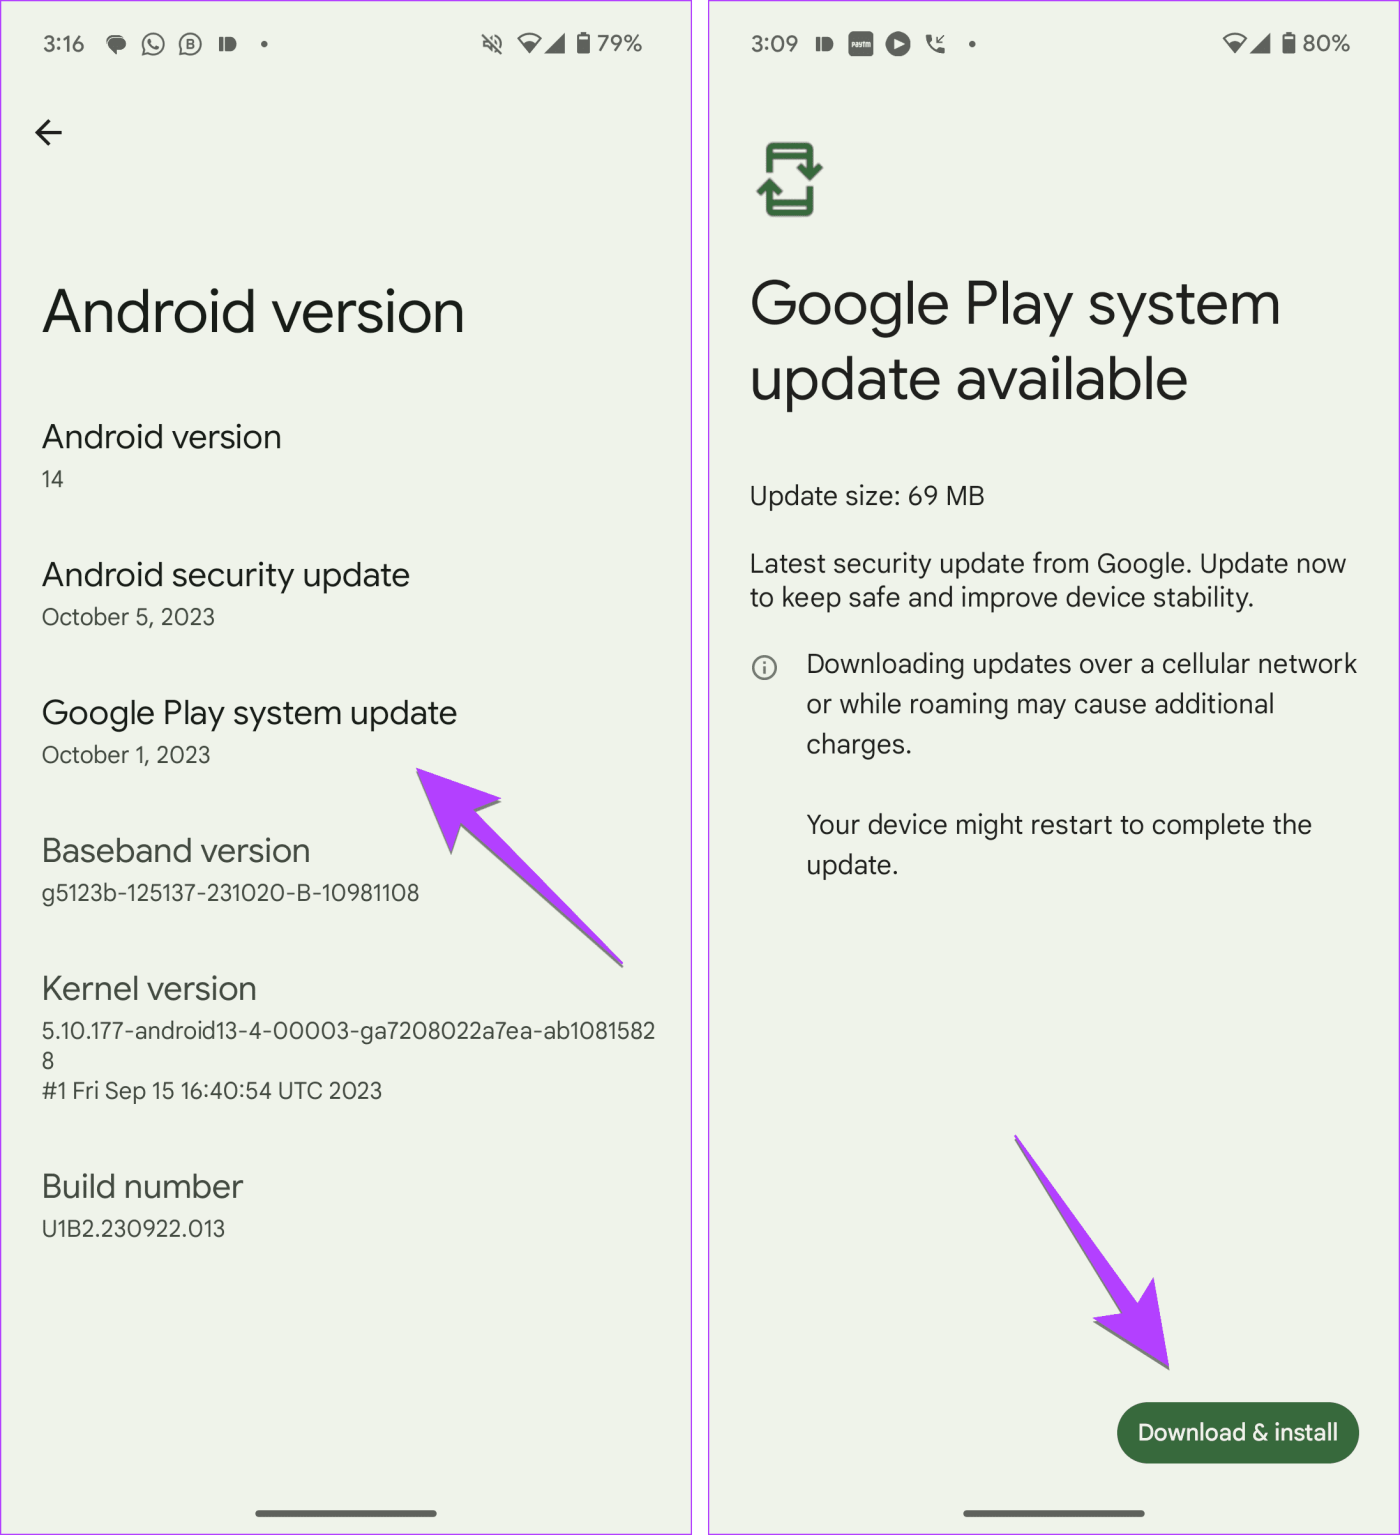 Come aggiornare manualmente Google Play Services